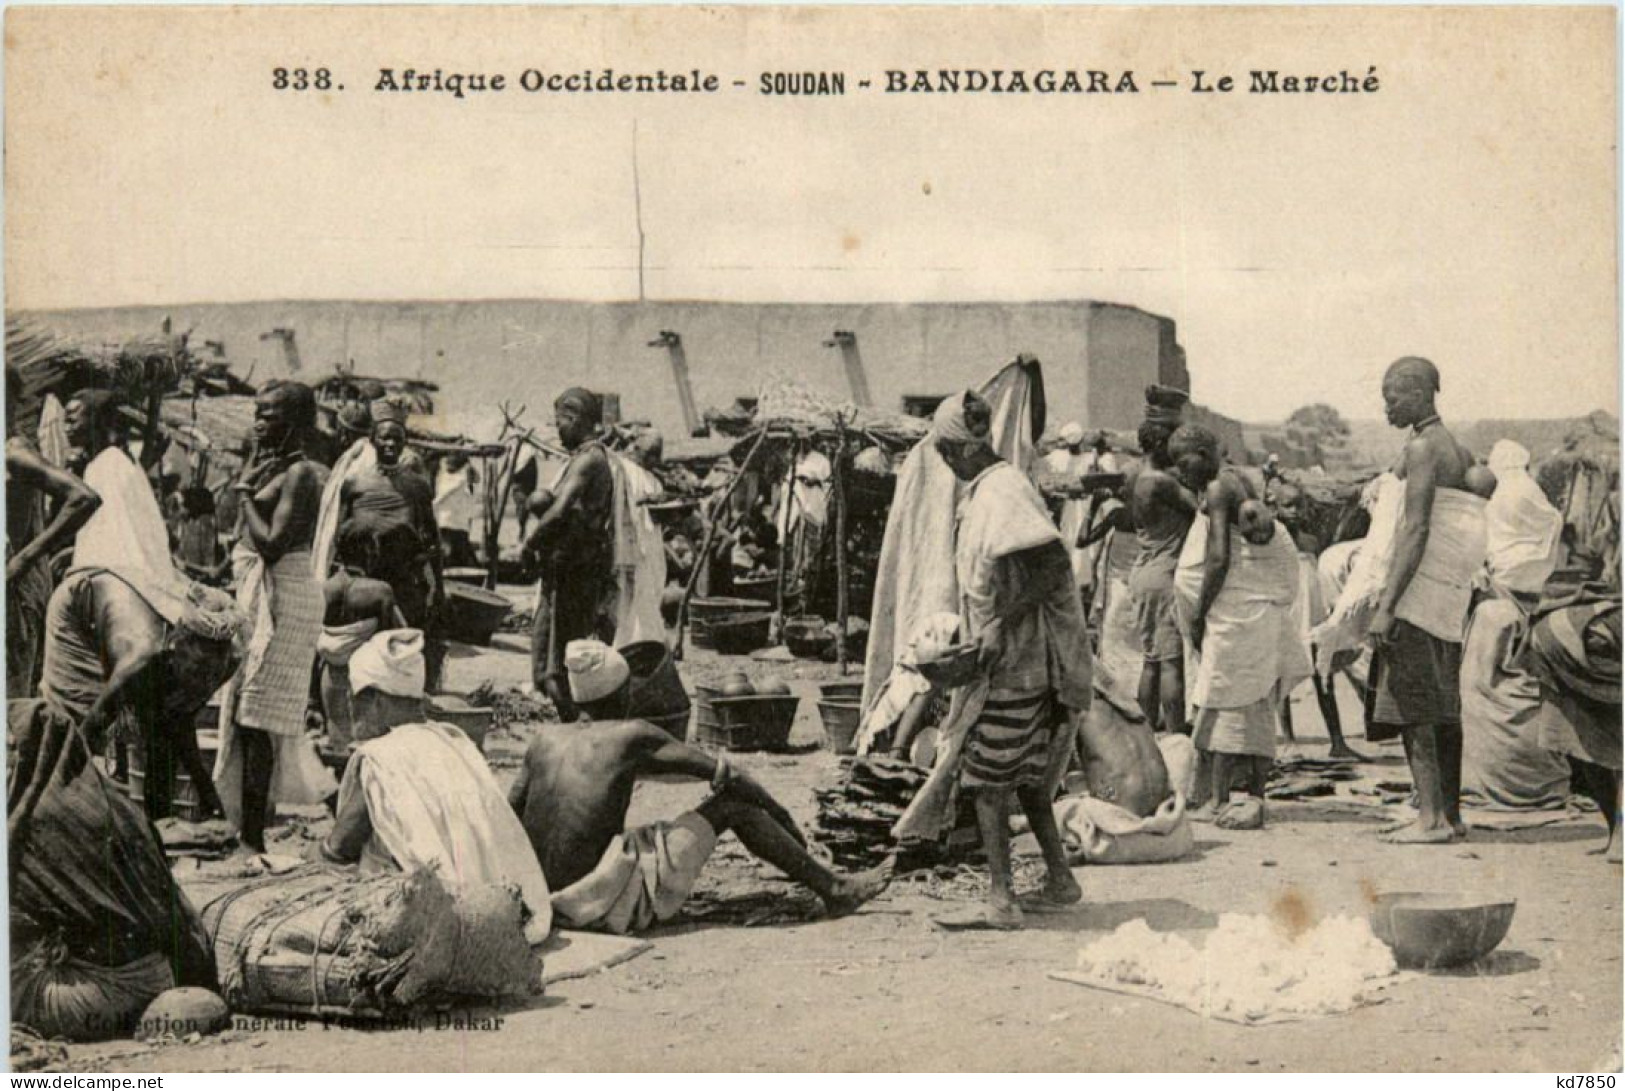 Soudan - Bandiagara - Le Marche - Sudan